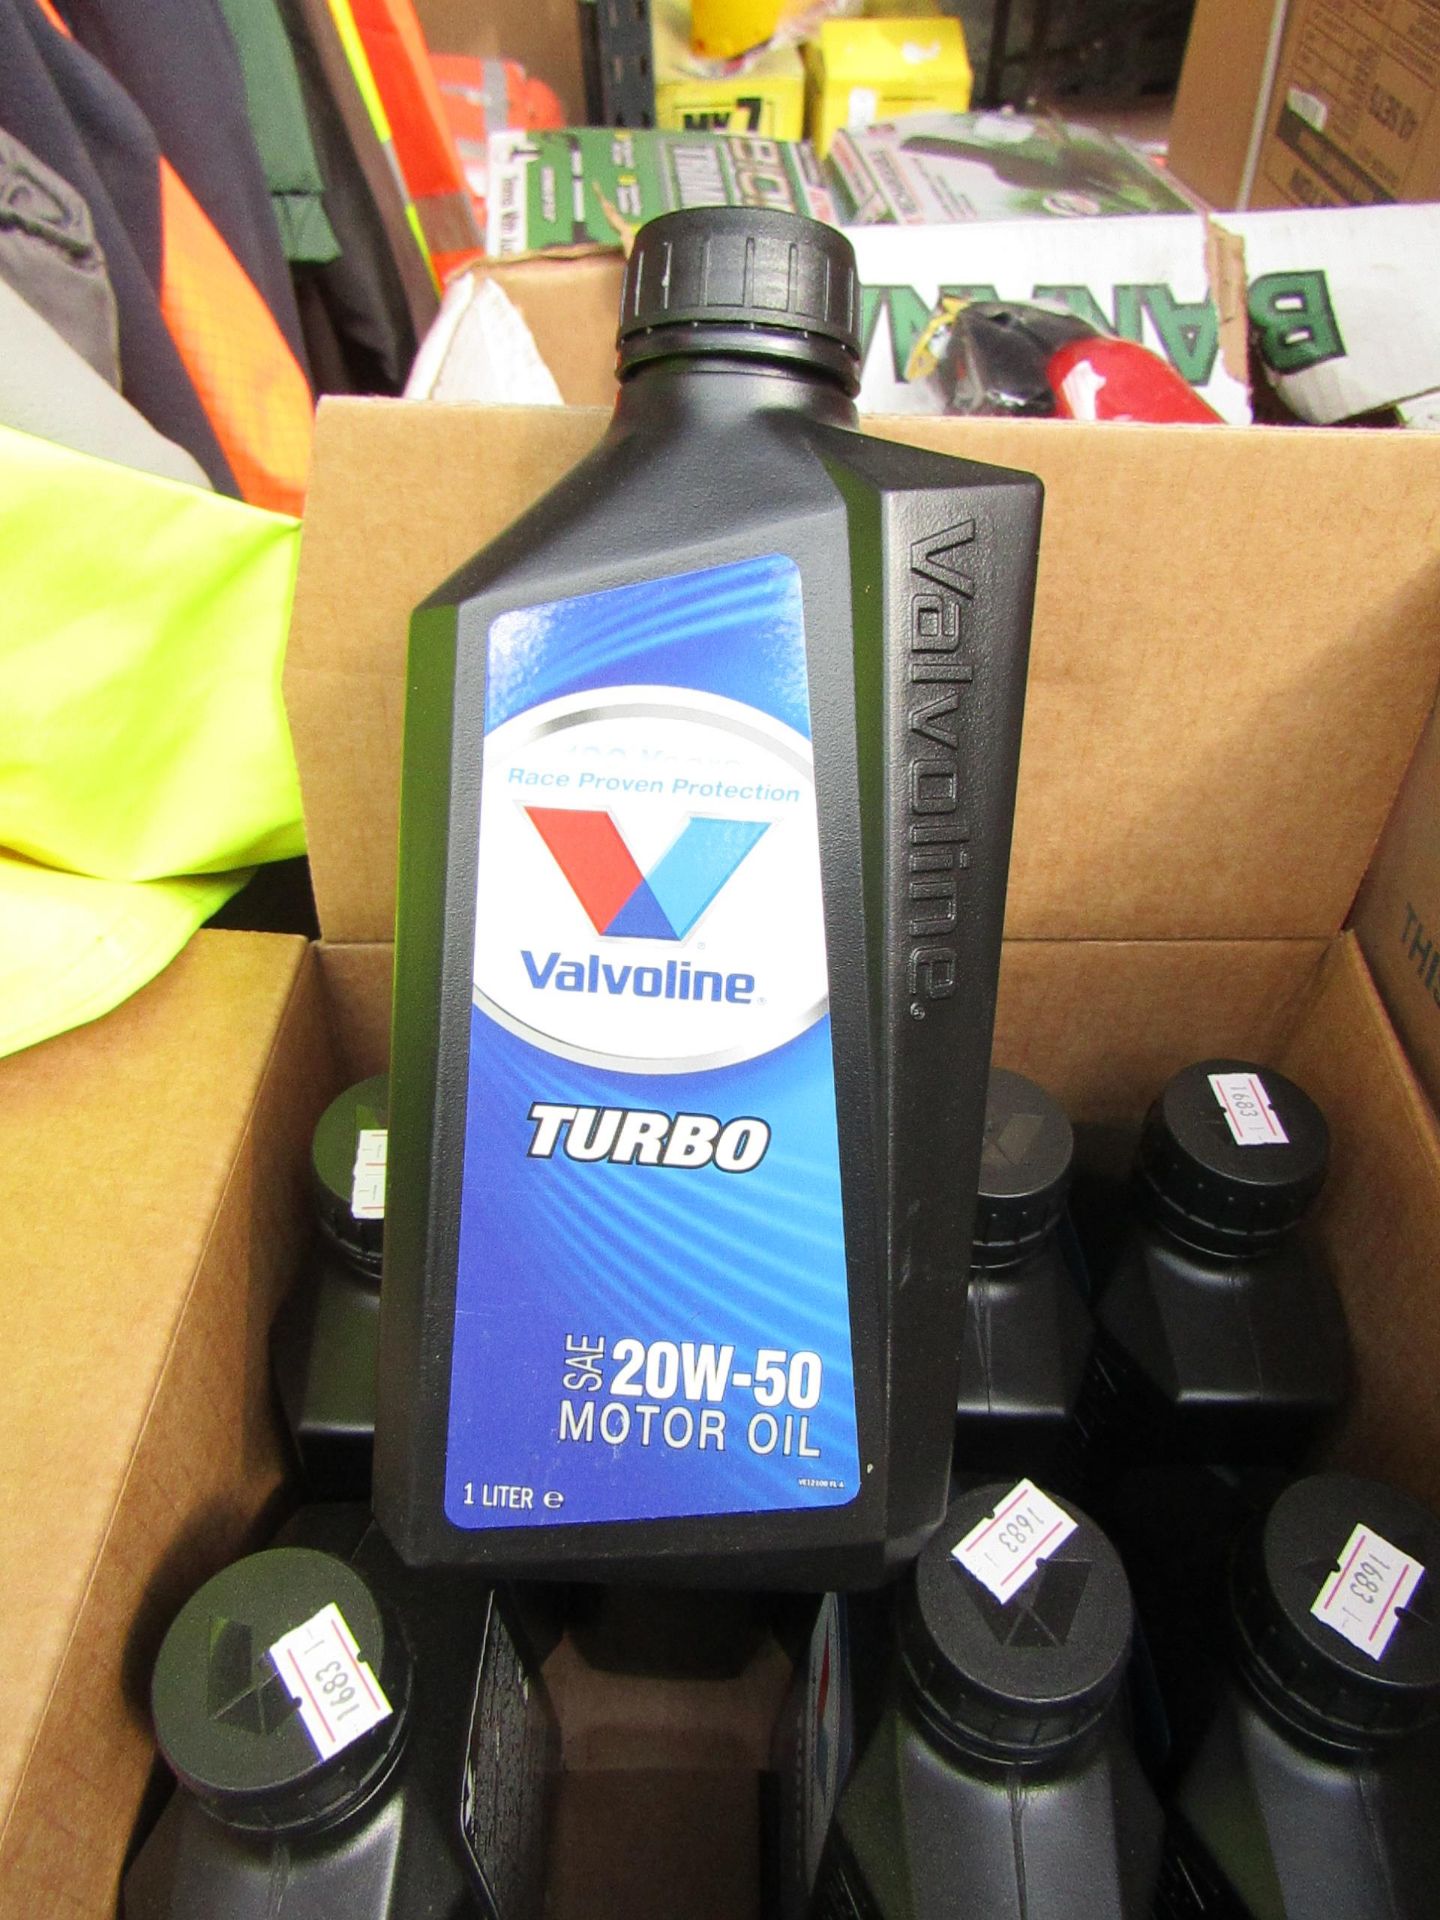 4x 1ltr bottles of Valvoline Turbo 20w-50 motor oil, new